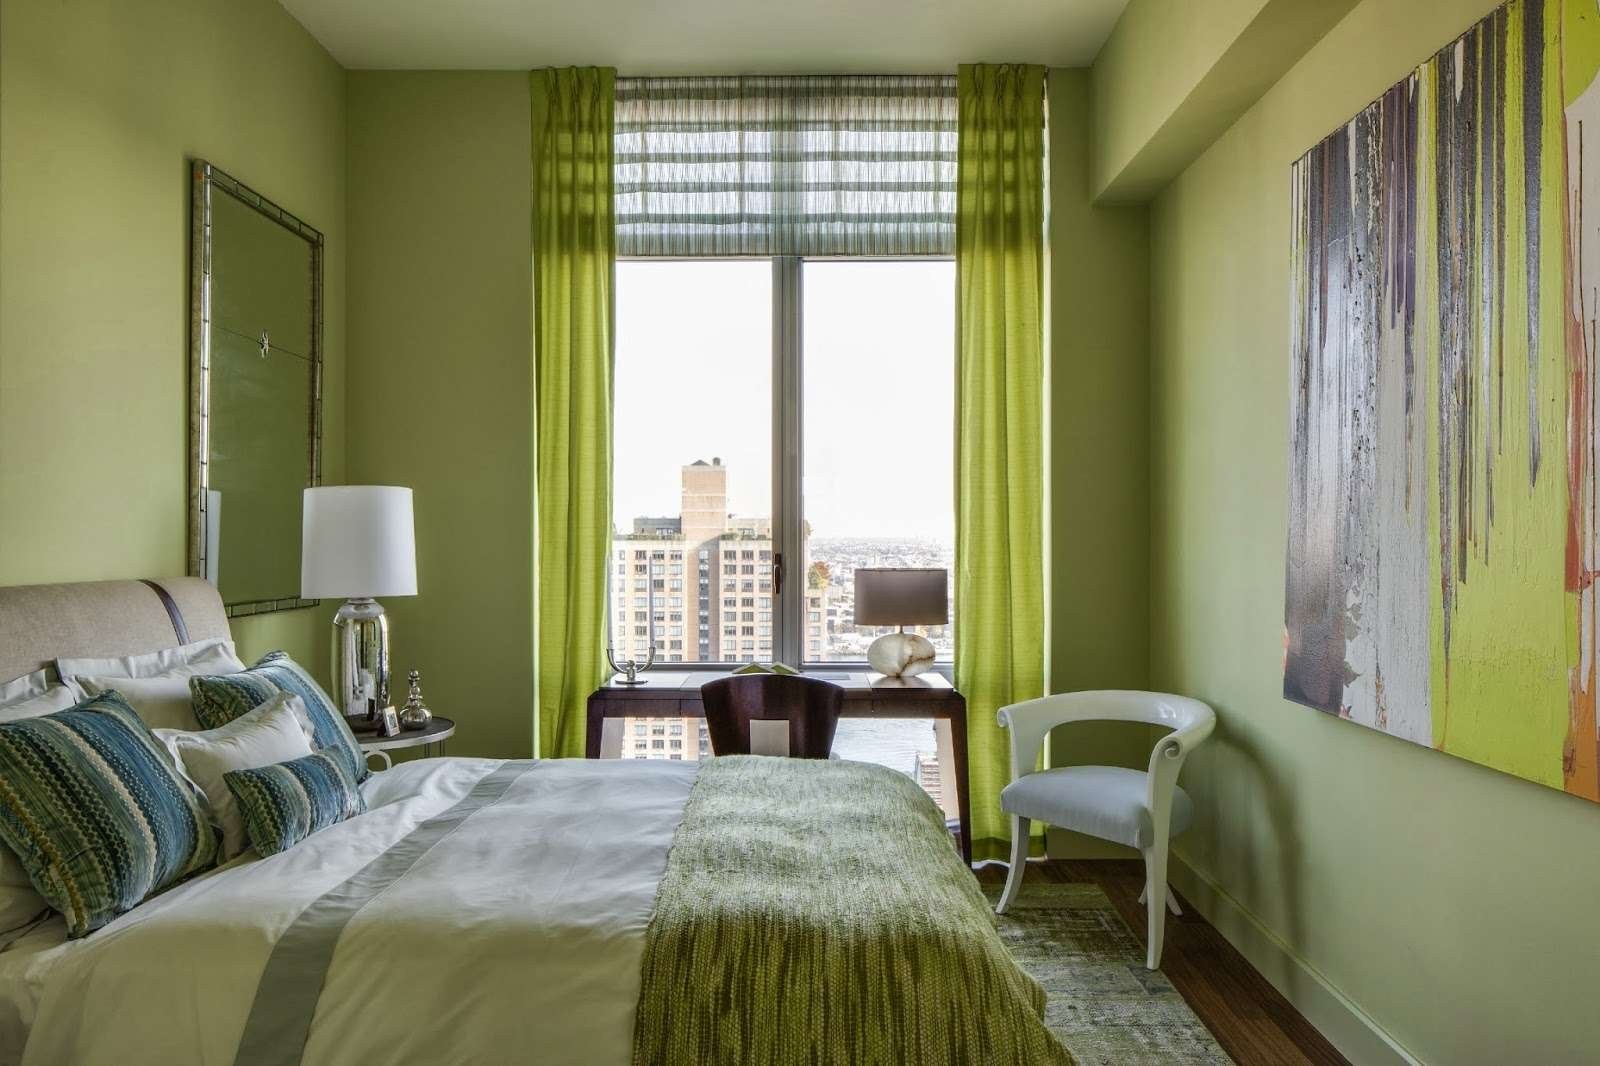 Зелено бежевые обои. Спальня с зелеными шторами. Спальня в оливковых тонах. Зеленые занавески в спальню. Фисташковые шторы в интерьере.